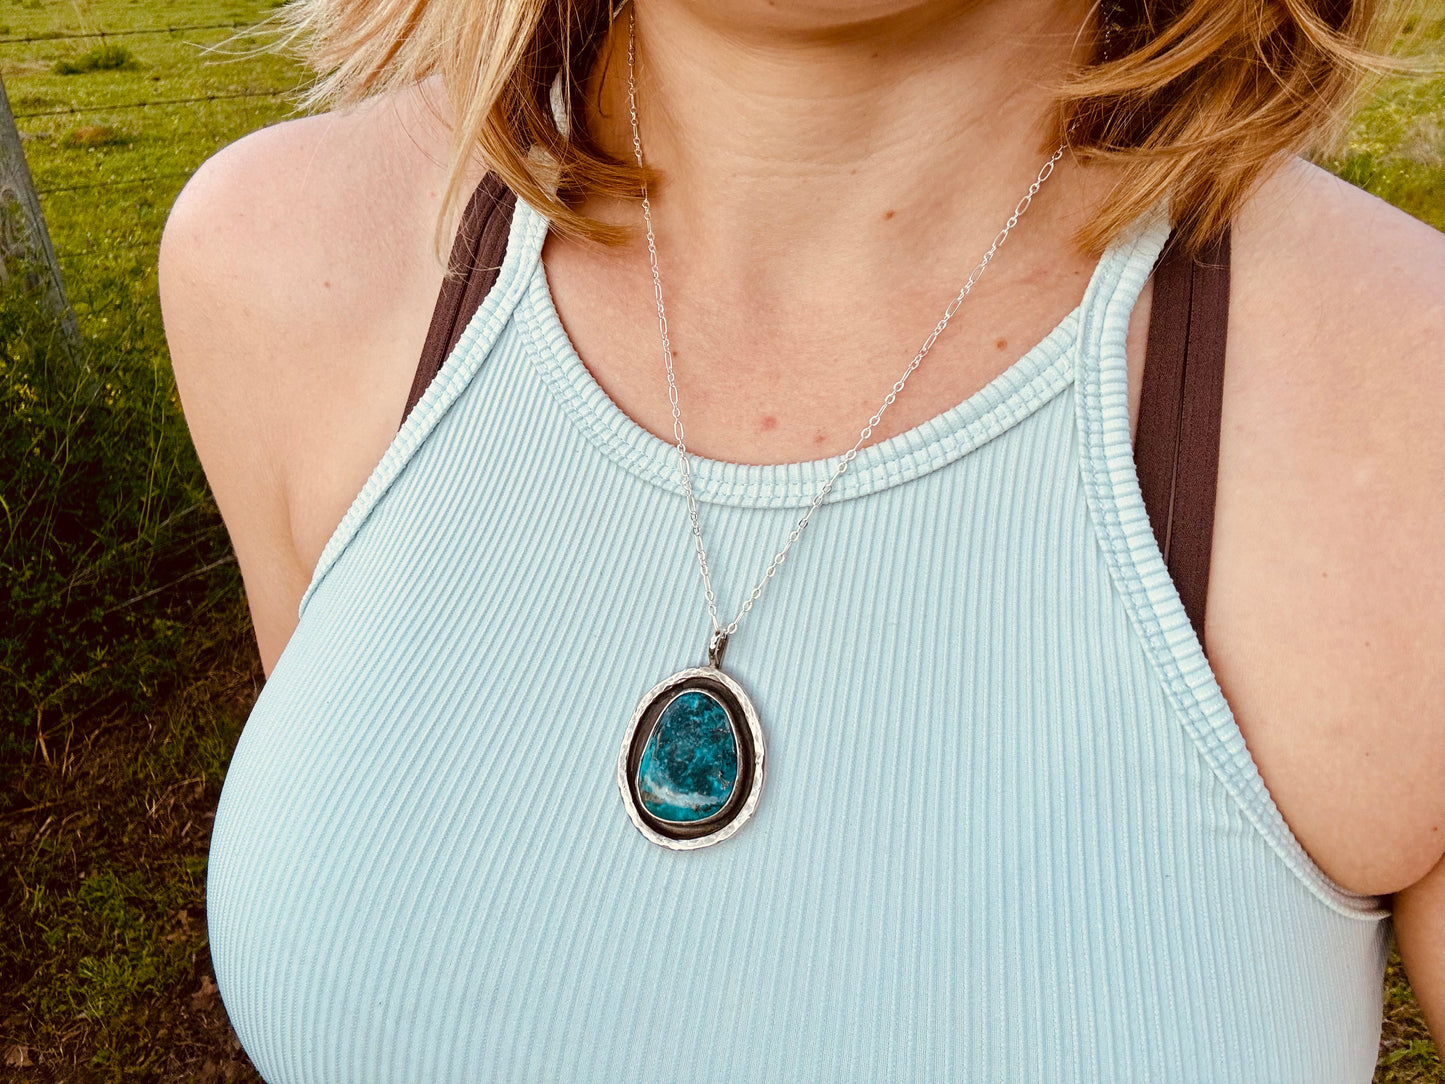 Oversized Morenci turquoise pendant